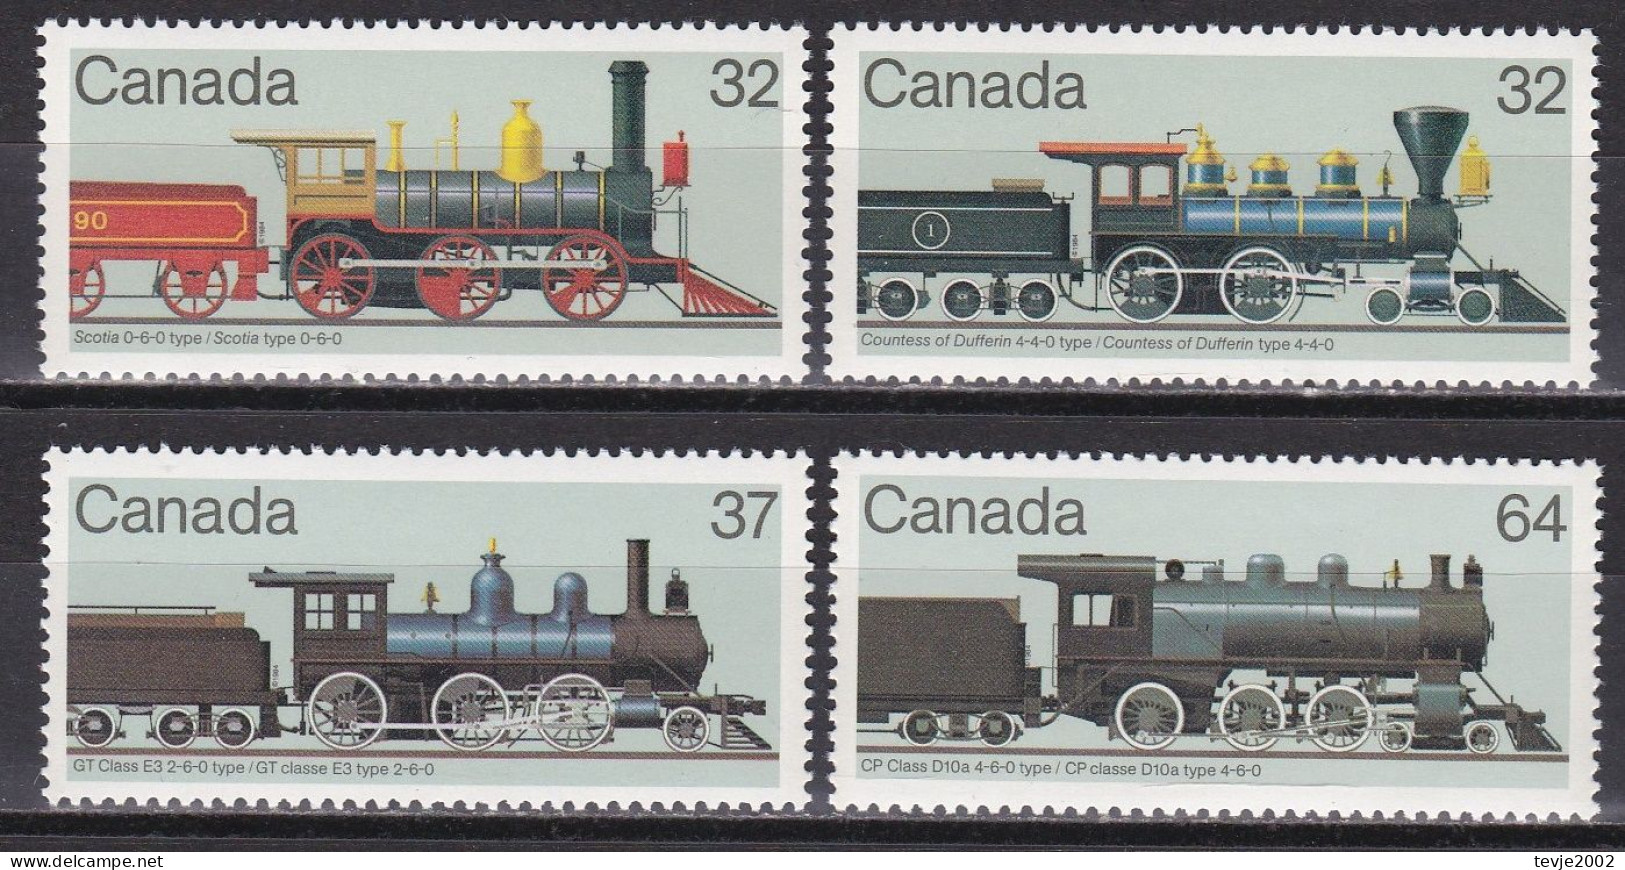 Canada Kanada 1984 - Mi.Nr. 931 - 934 - Postfrisch MNH - Eisenbahnen Railways Lokomotiven Locomotives - Eisenbahnen